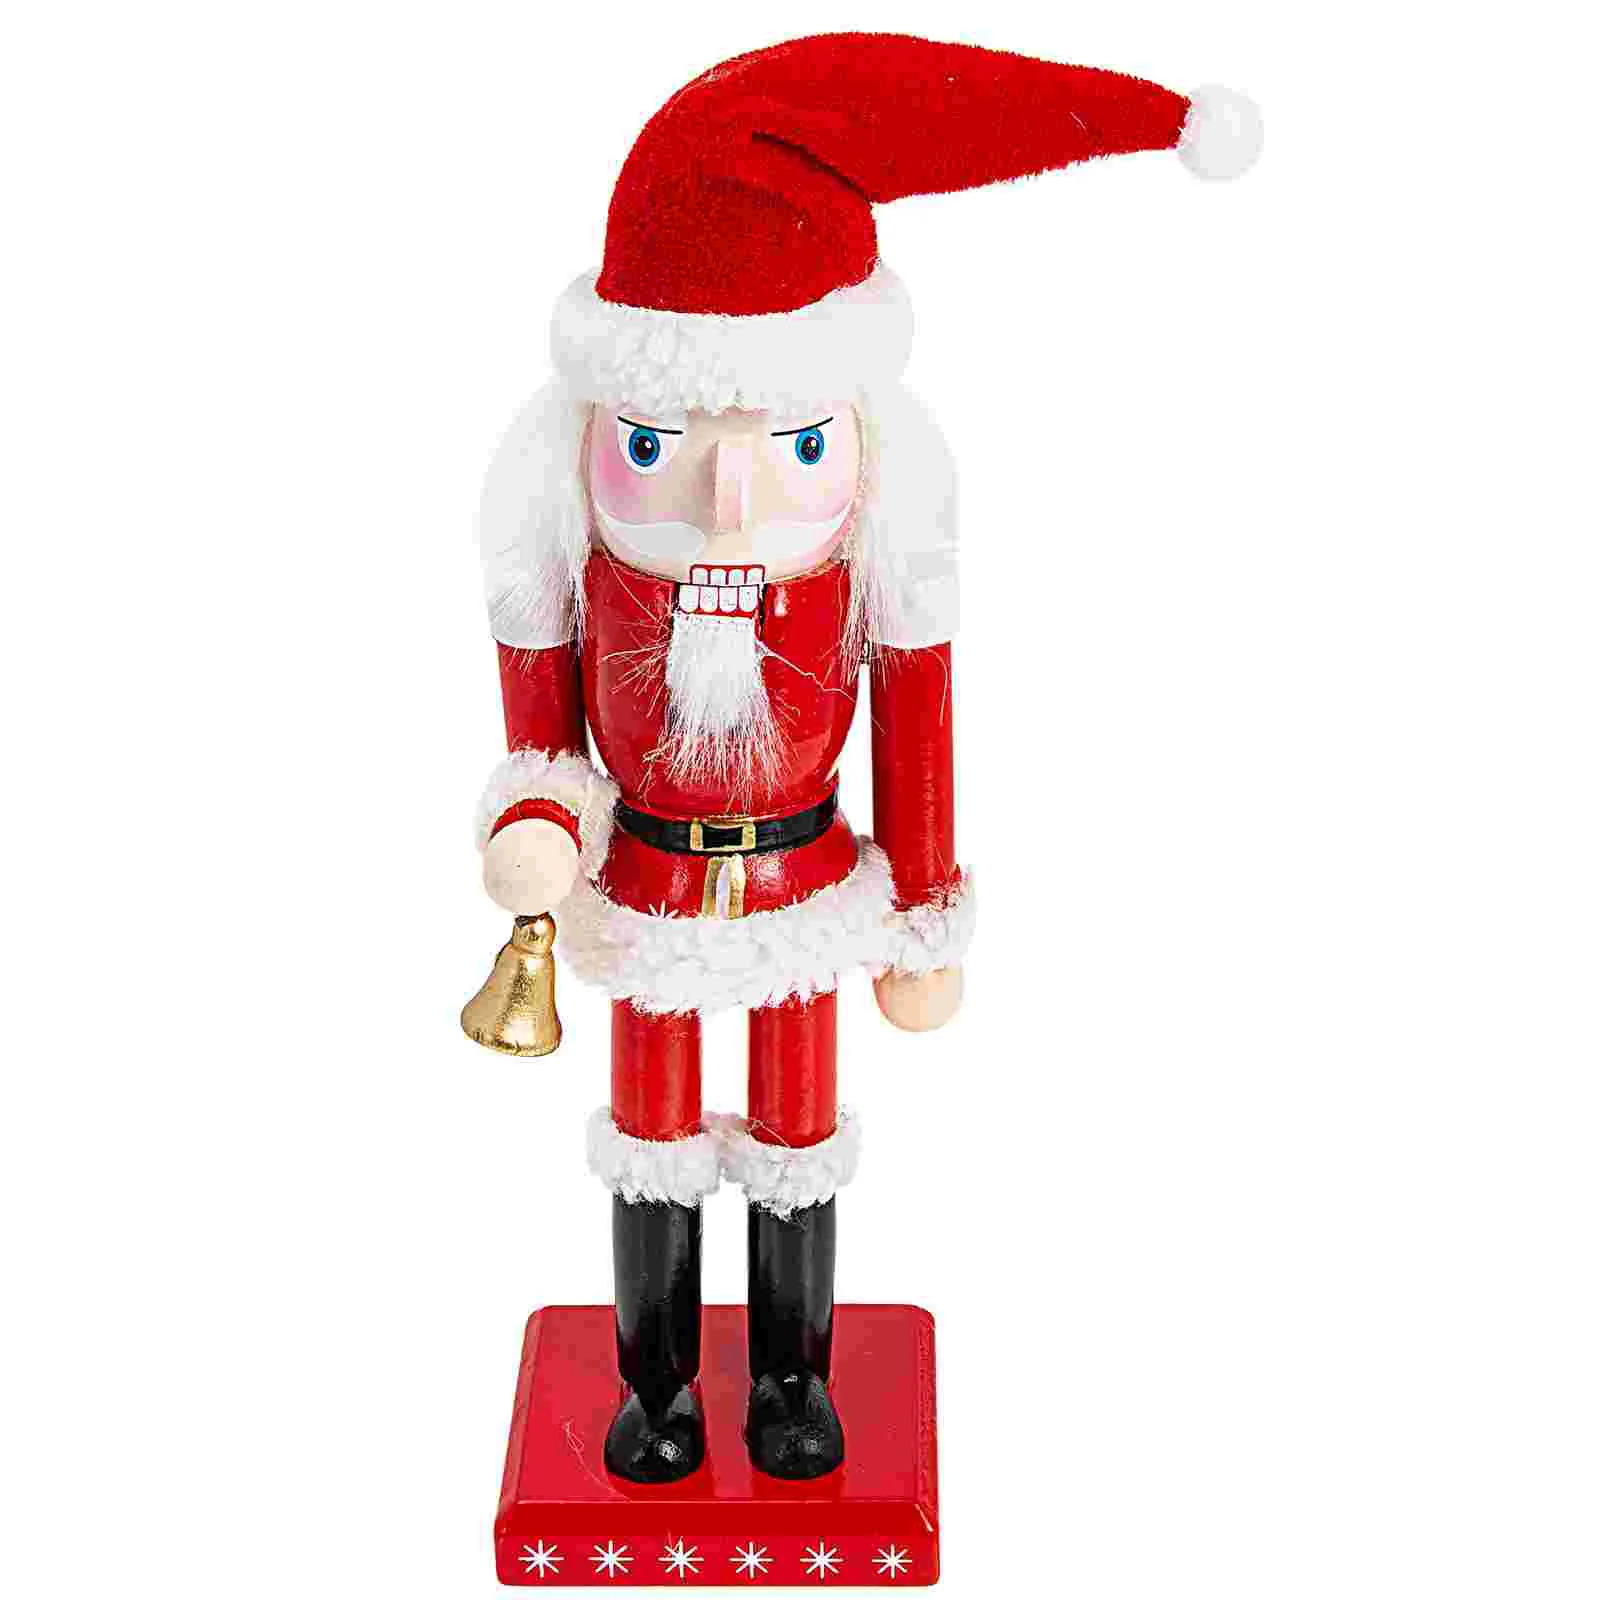 

Nutcracker Christmas Santa Decoraciones Para Cuartos Wooden Decorations Claus Soldierwood Decor Crafts Table Figurine